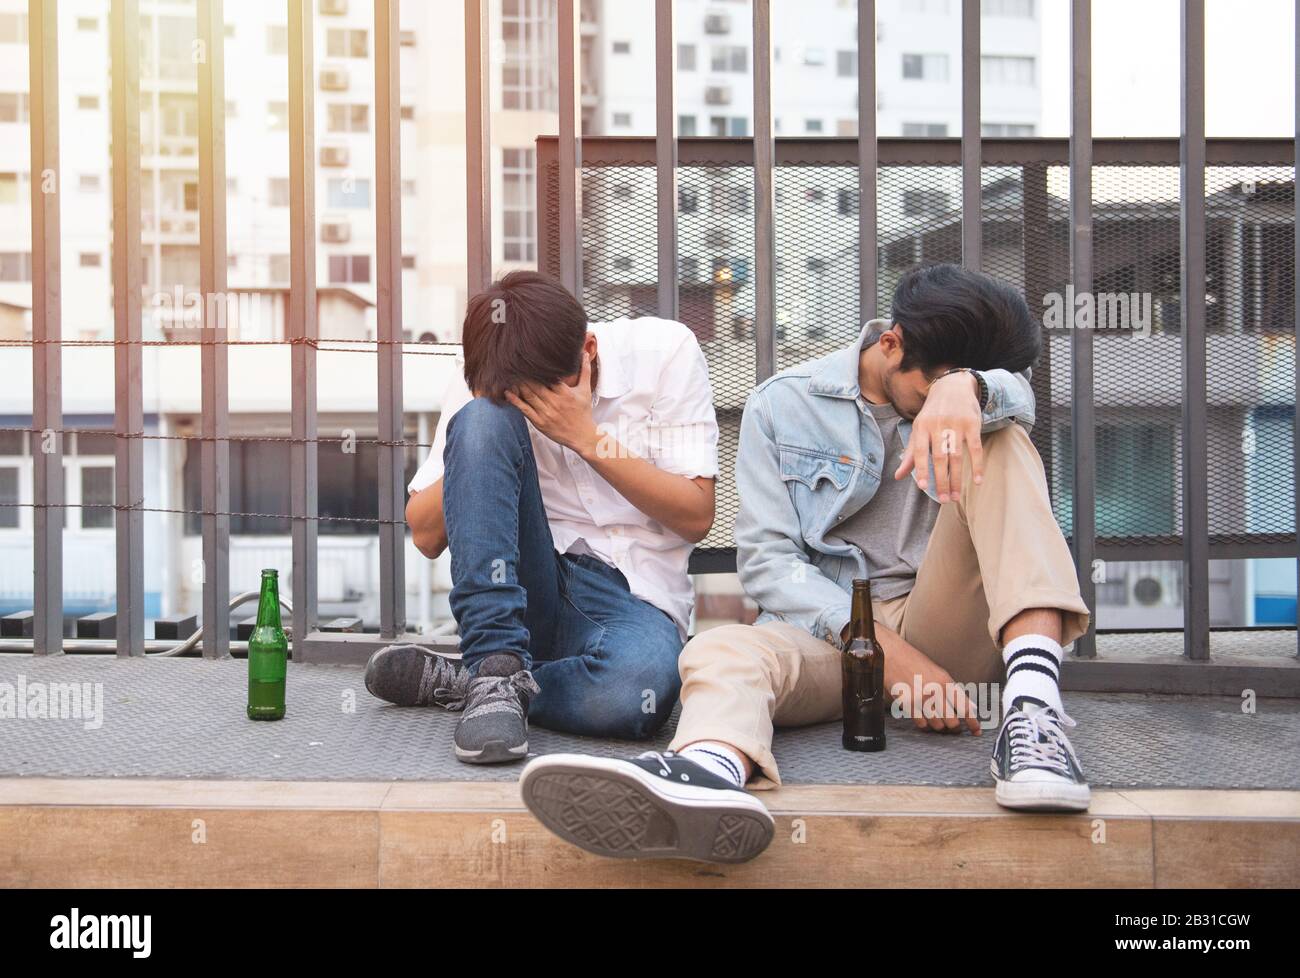 Zwei junge Männer betrunken und sitzen schlafend auf der Straße mit einer Flasche Bier in unglücklicher. Stockfoto